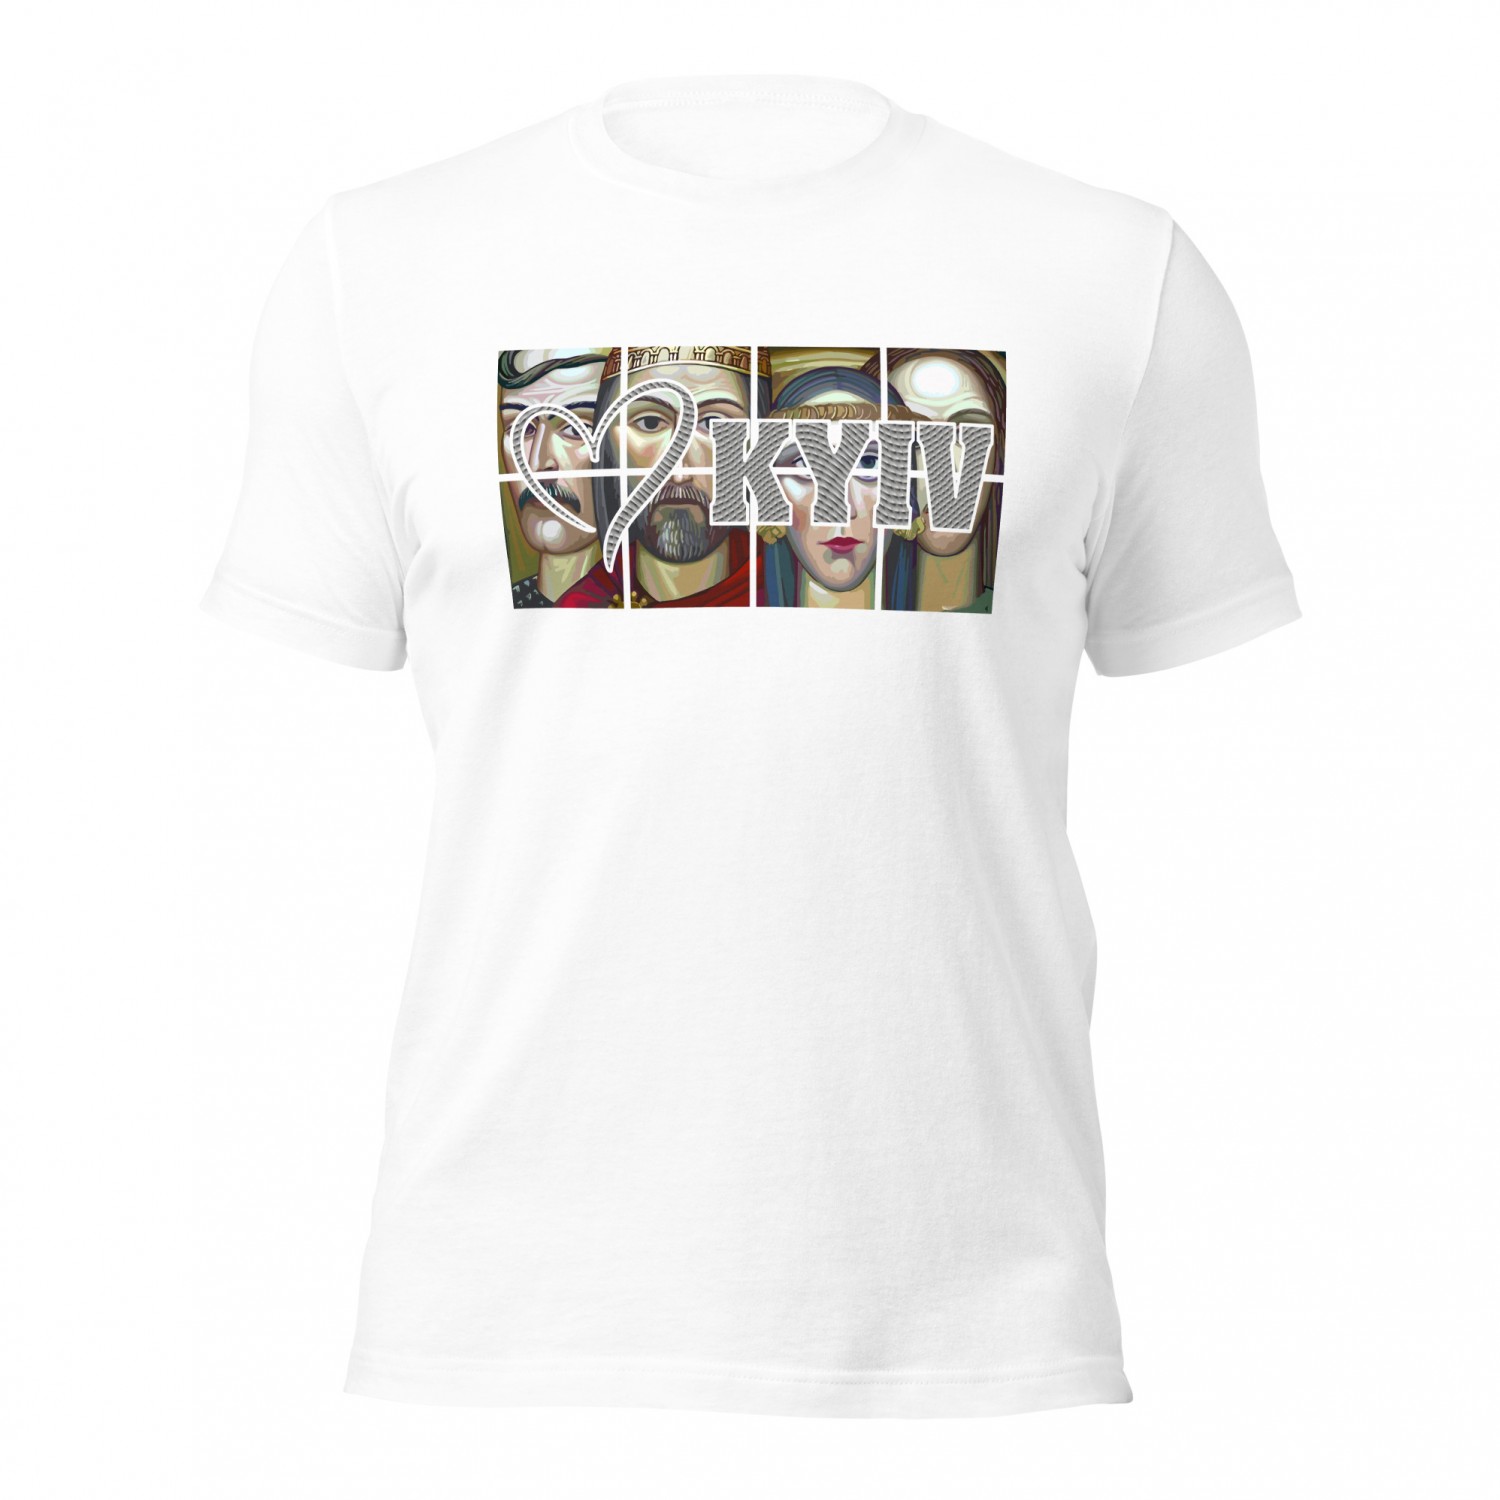 Kup koszulkę - Kijów